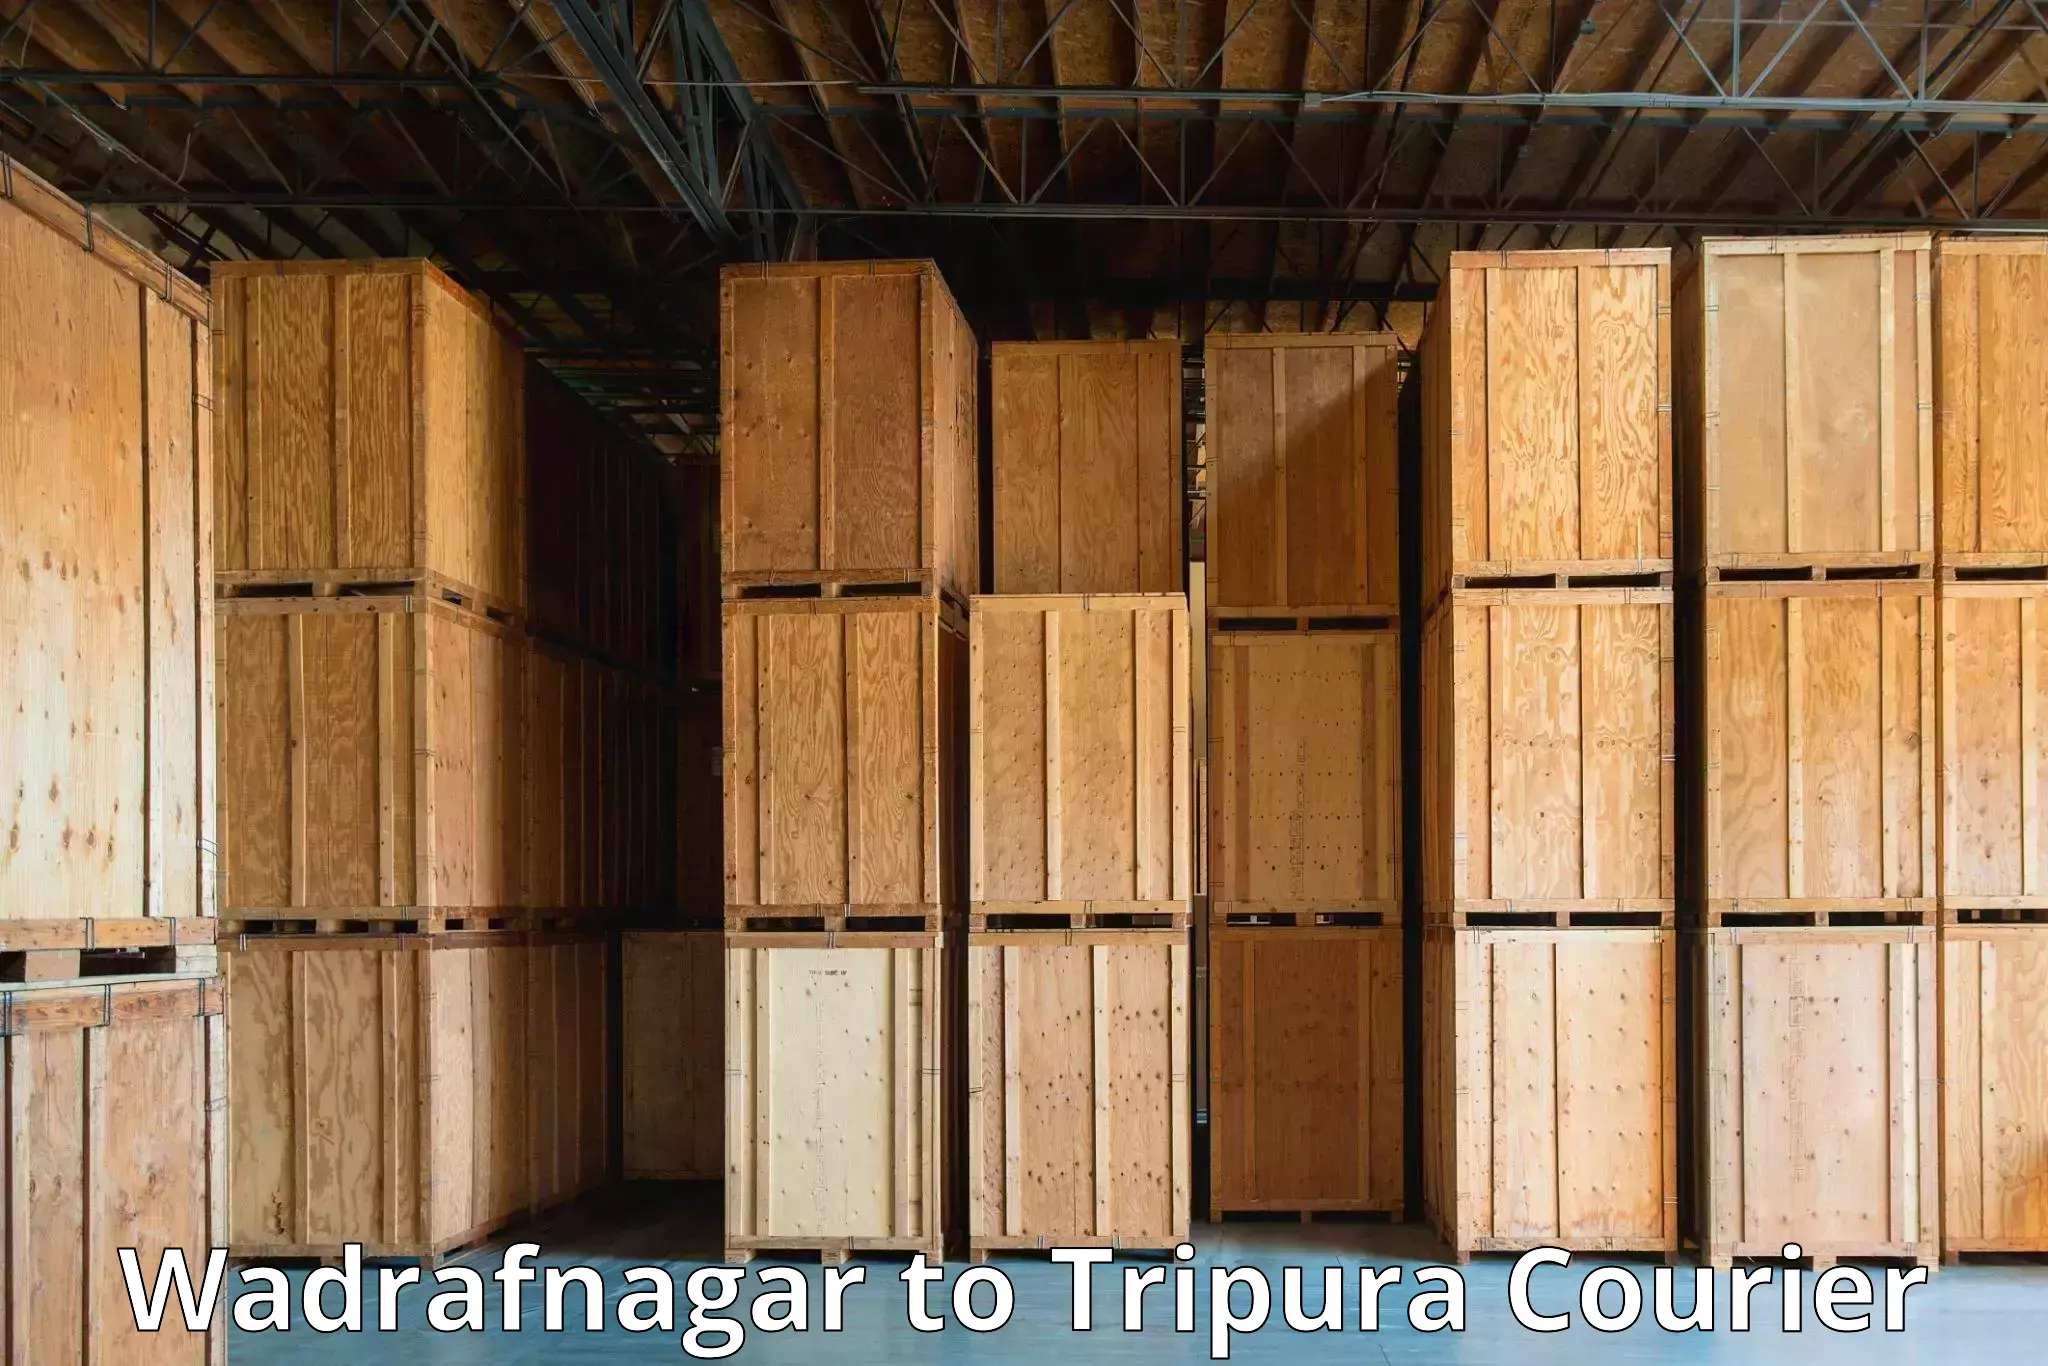 Expedited parcel delivery Wadrafnagar to Udaipur Tripura